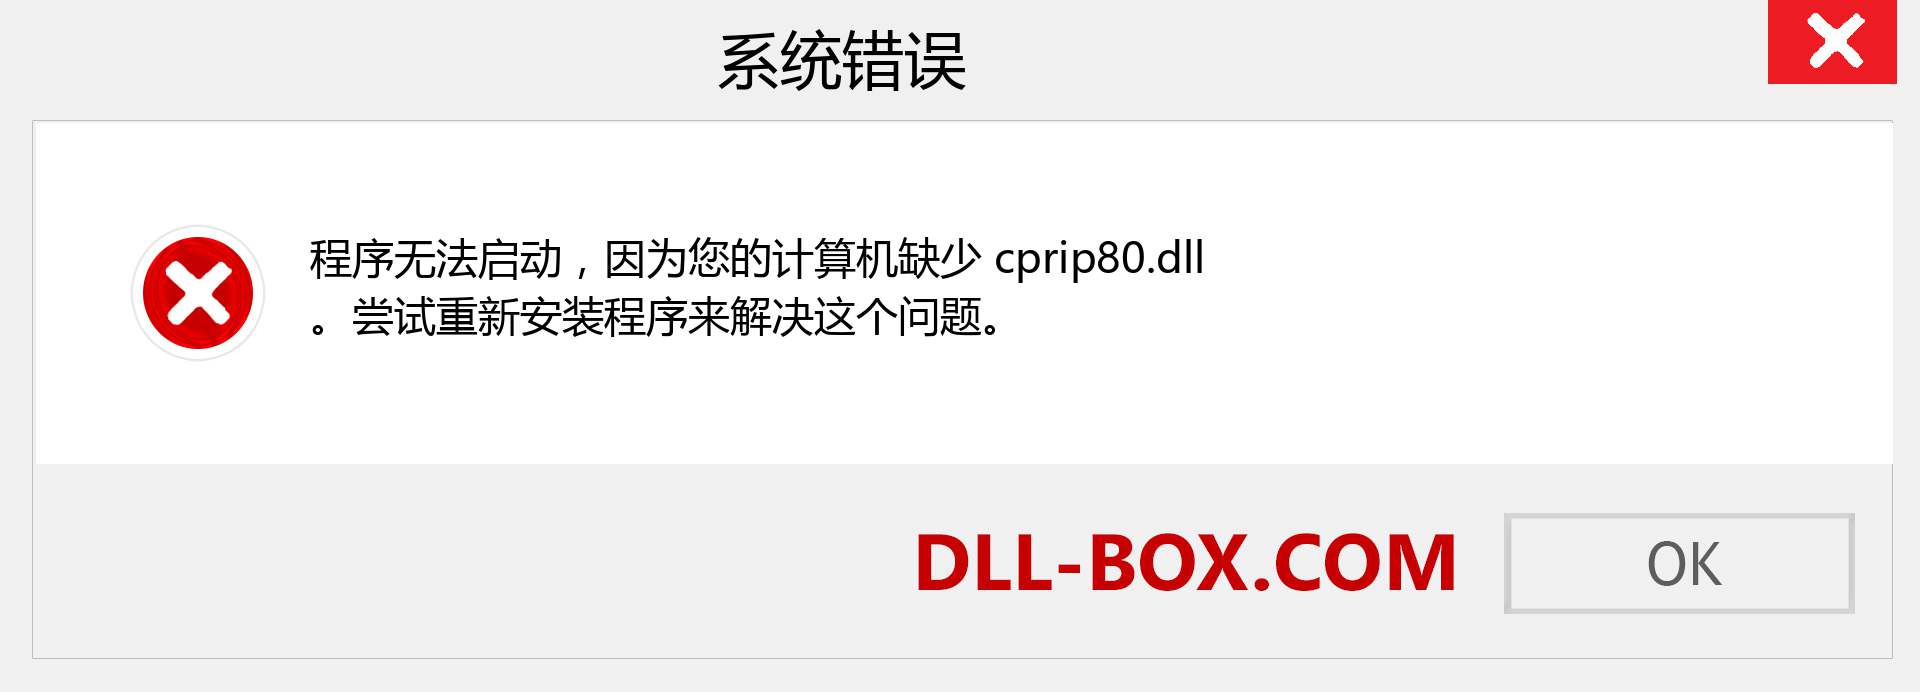 cprip80.dll 文件丢失？。 适用于 Windows 7、8、10 的下载 - 修复 Windows、照片、图像上的 cprip80 dll 丢失错误